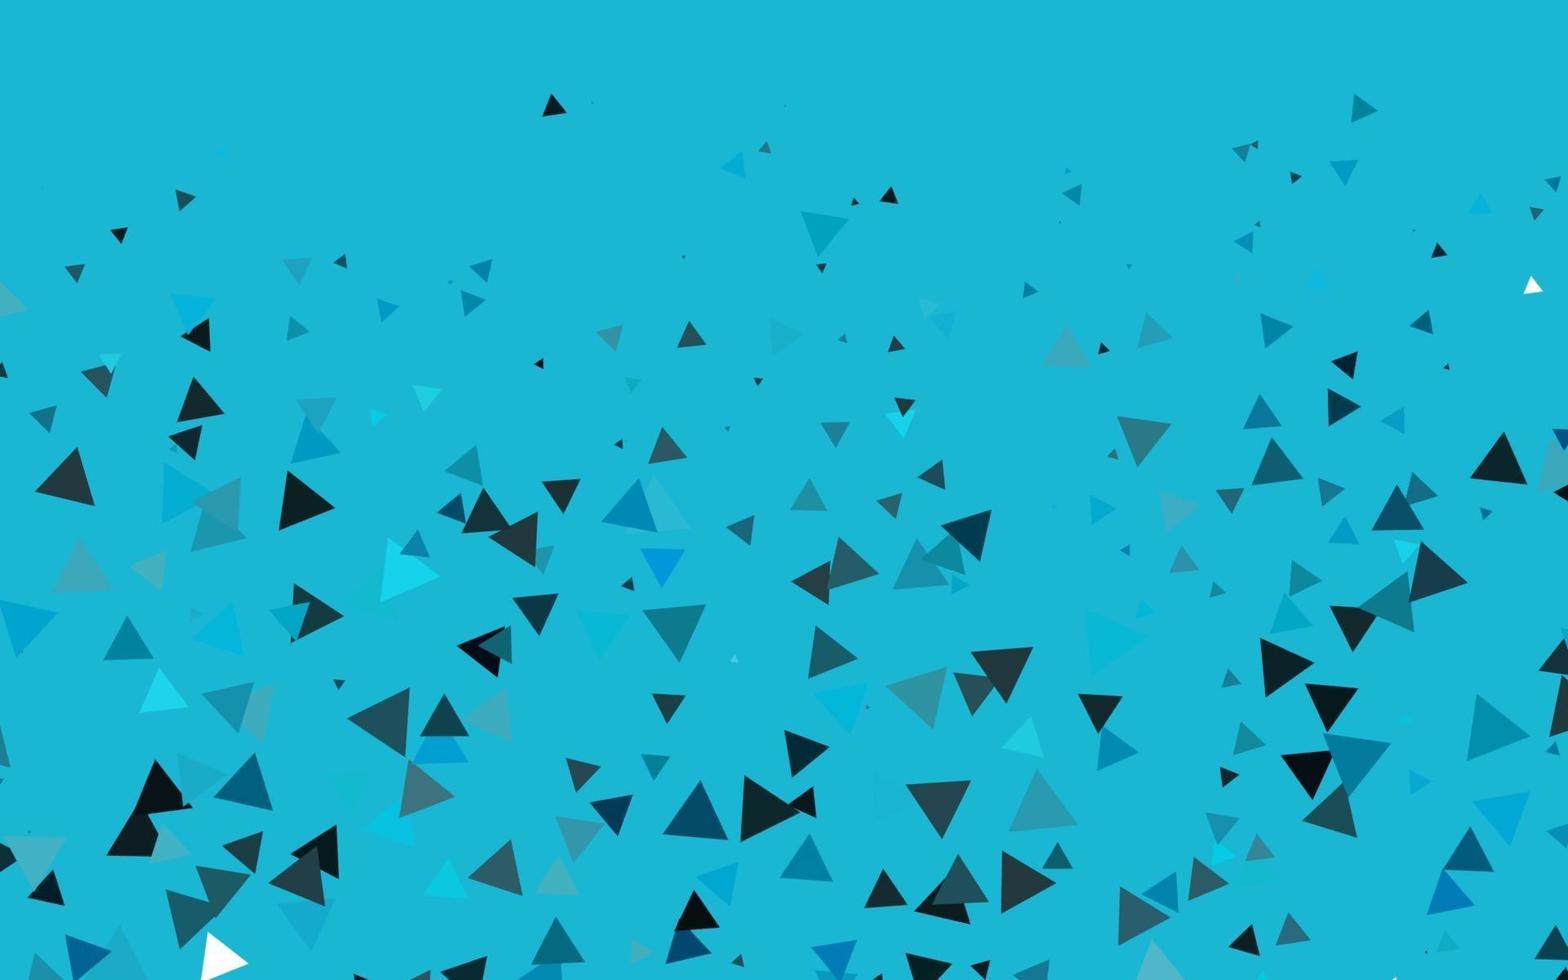 padrão de vetor azul claro em estilo poligonal.